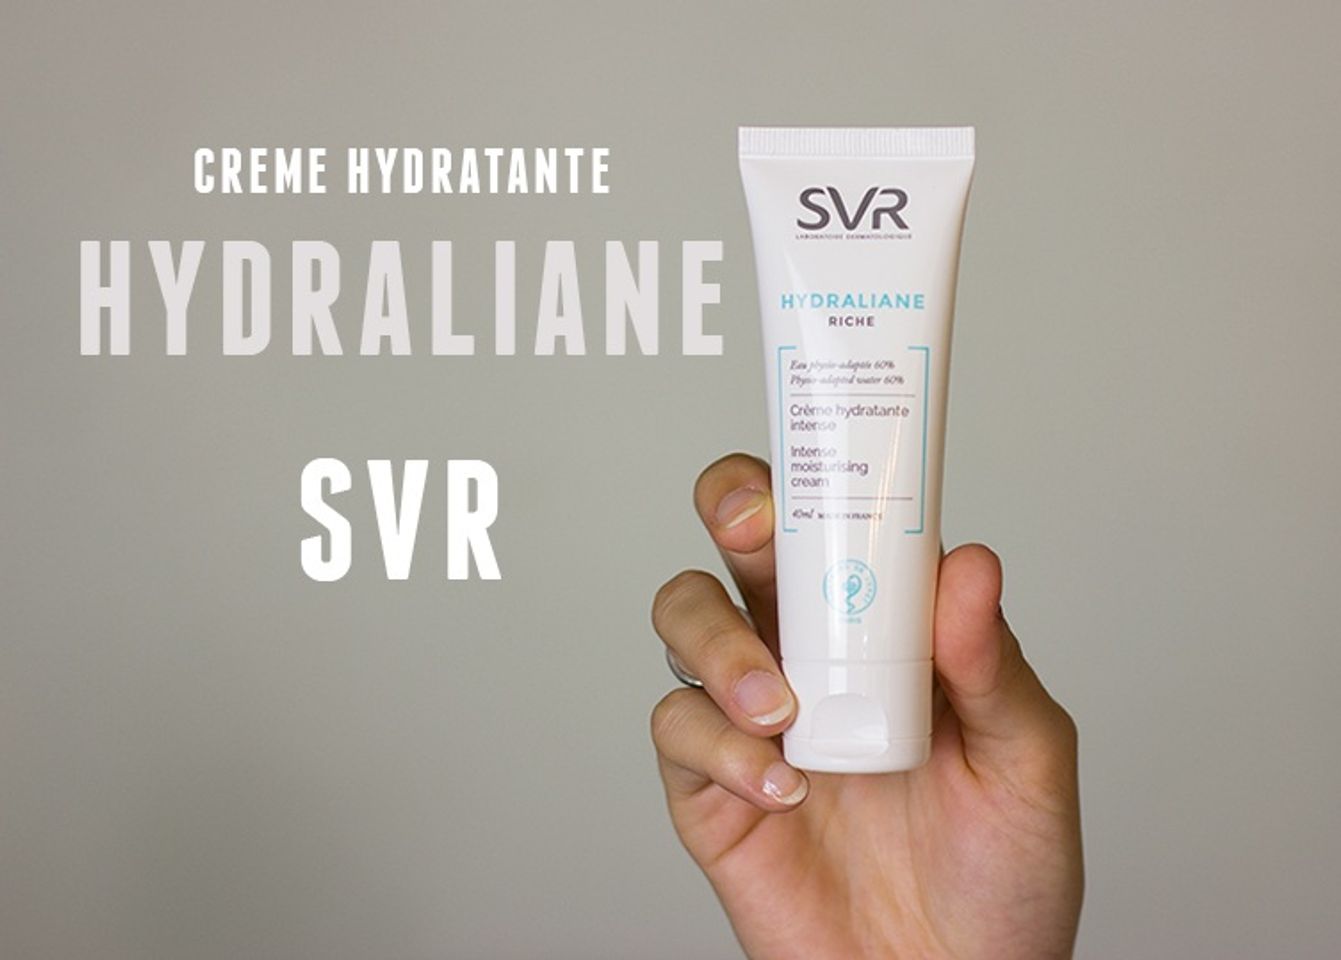 Hydraliane Riche - SVR dòng kem dưỡng ẩm đặc biệt cho da khô đến cực khô